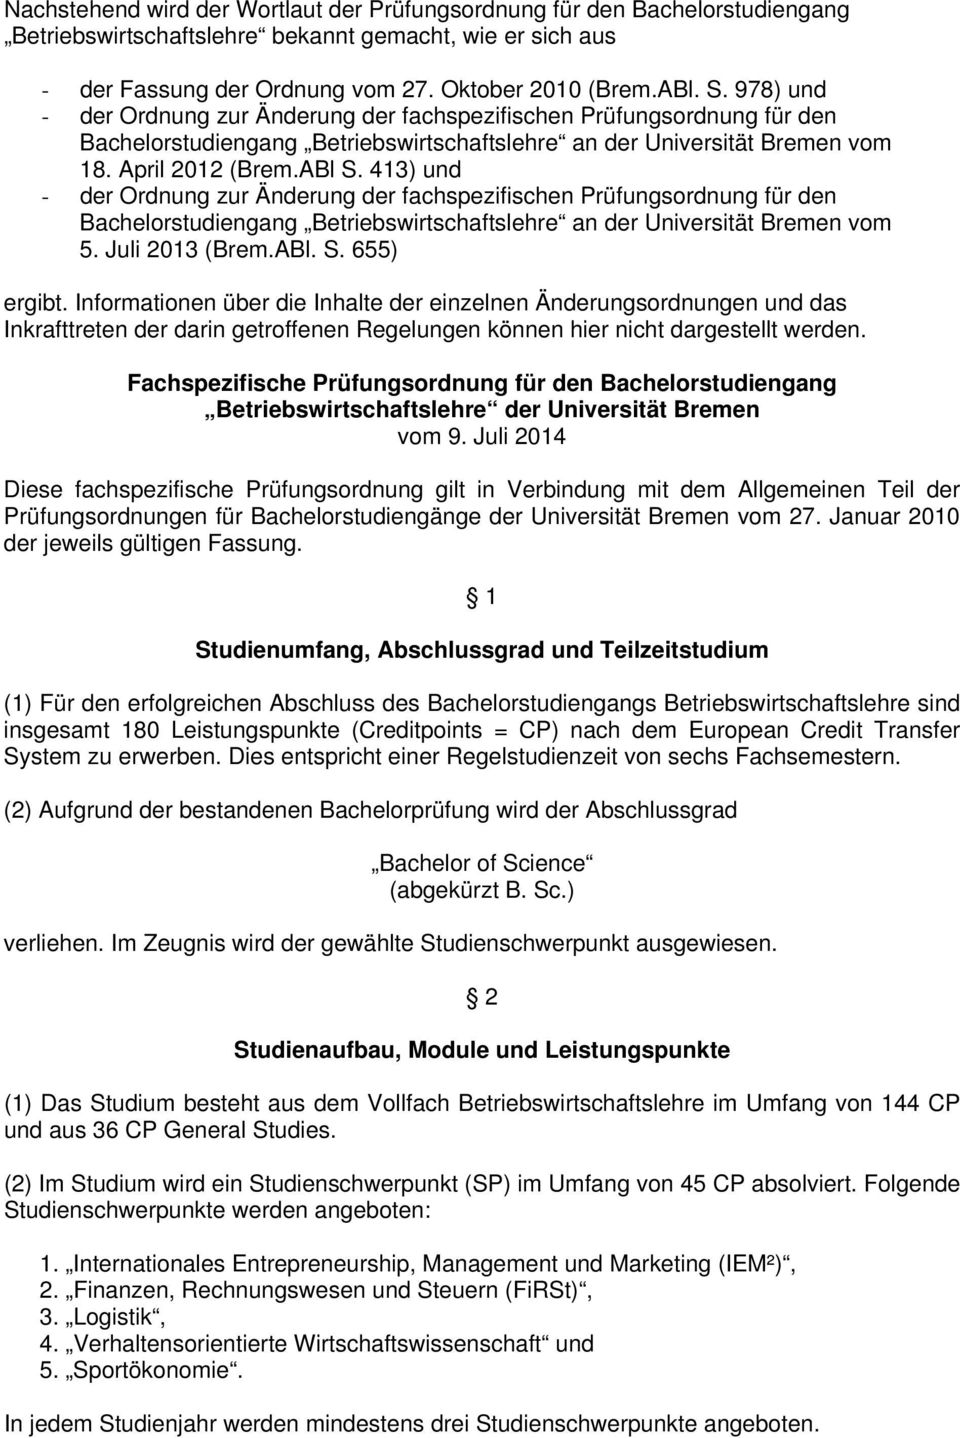 413) und - der Ordnung zur Änderung der fachspezifischen Prüfungsordnung für den Bachelorstudiengang Betriebswirtschaftslehre an der Universität Bremen vom 5. Juli 2013 (Brem.ABl. S. 655) ergibt.